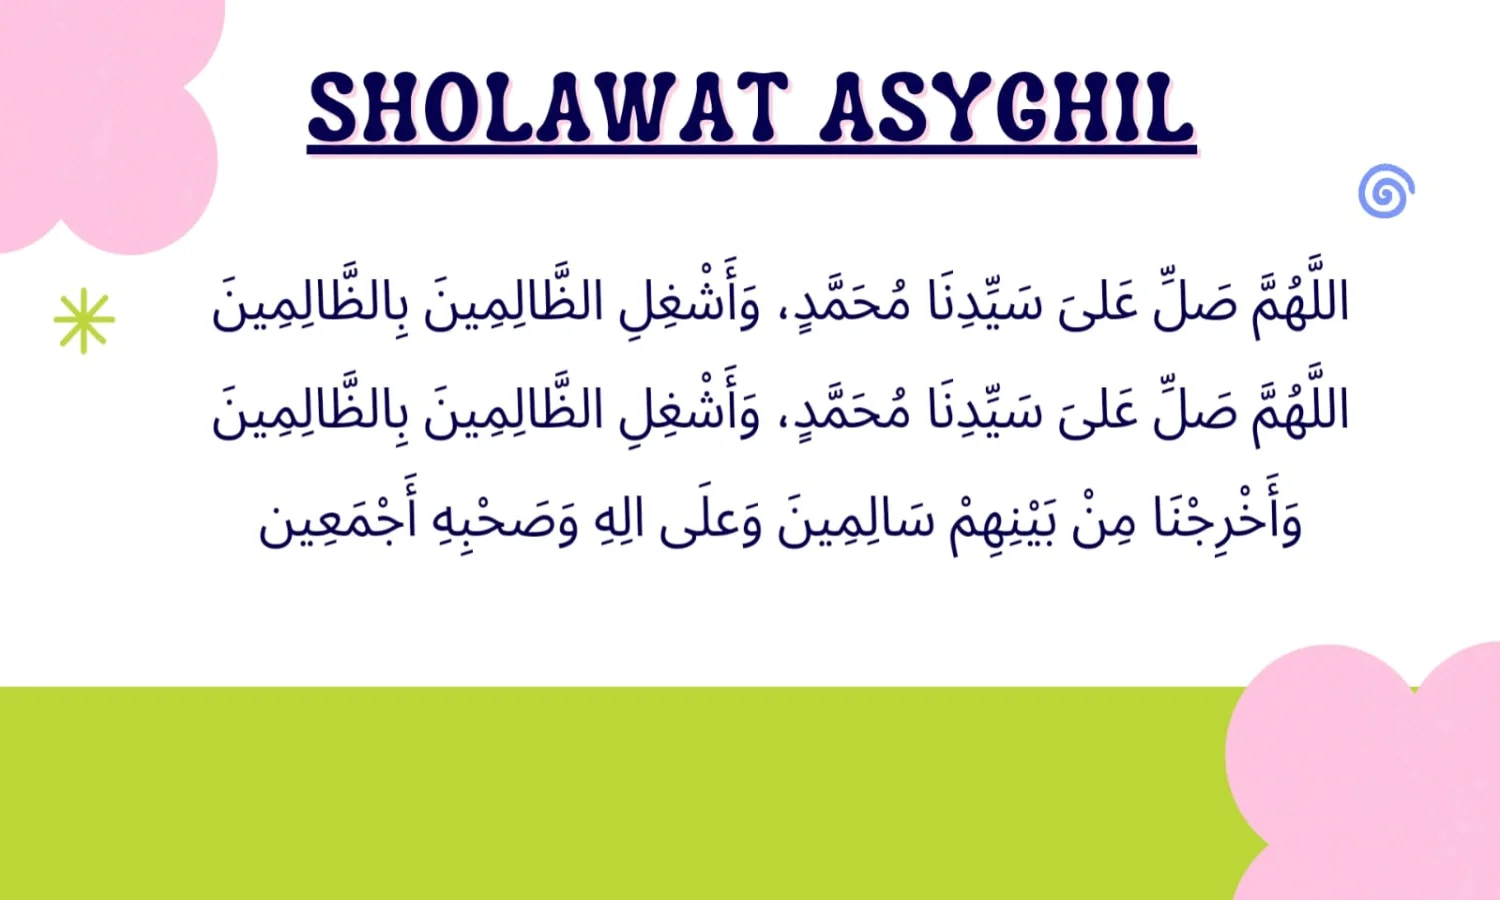 Sholawat Asyghil: Bahasa Arab, Latin, Terjemahan, Sejarah, Manfaat dan Cara Mengamalkannya